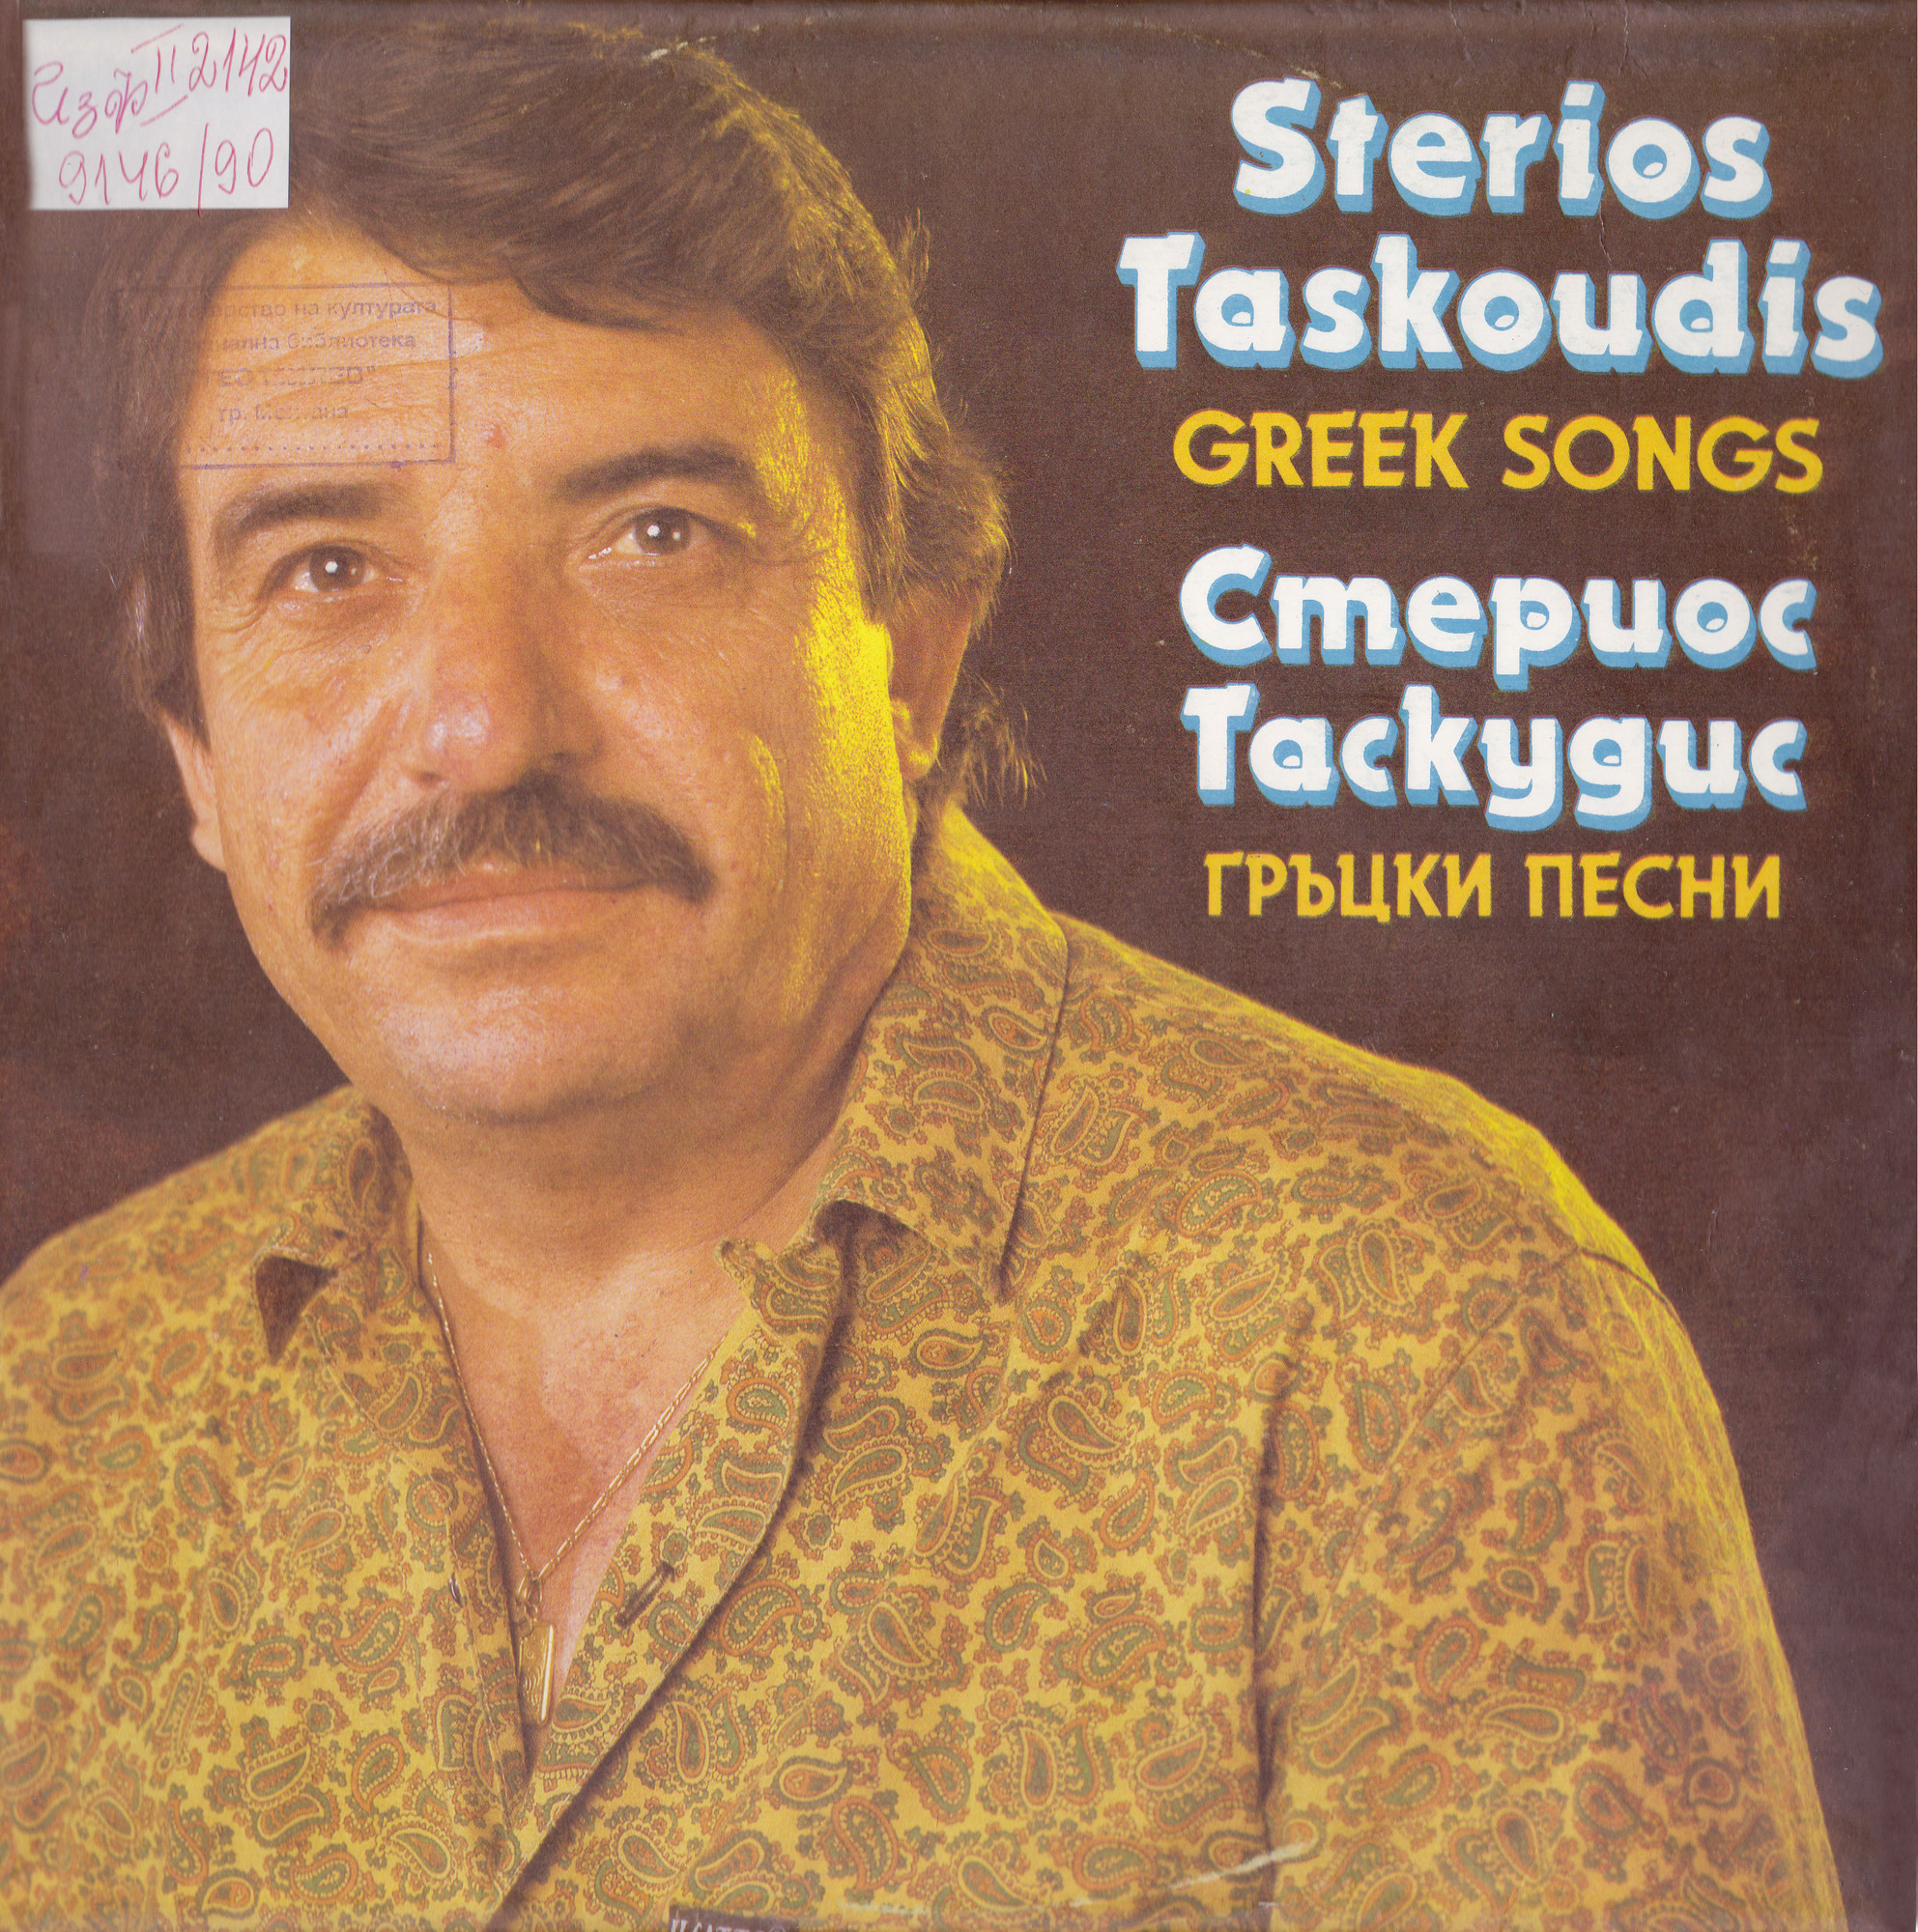 Гръцки песни изпълнява Стериос Таскудис